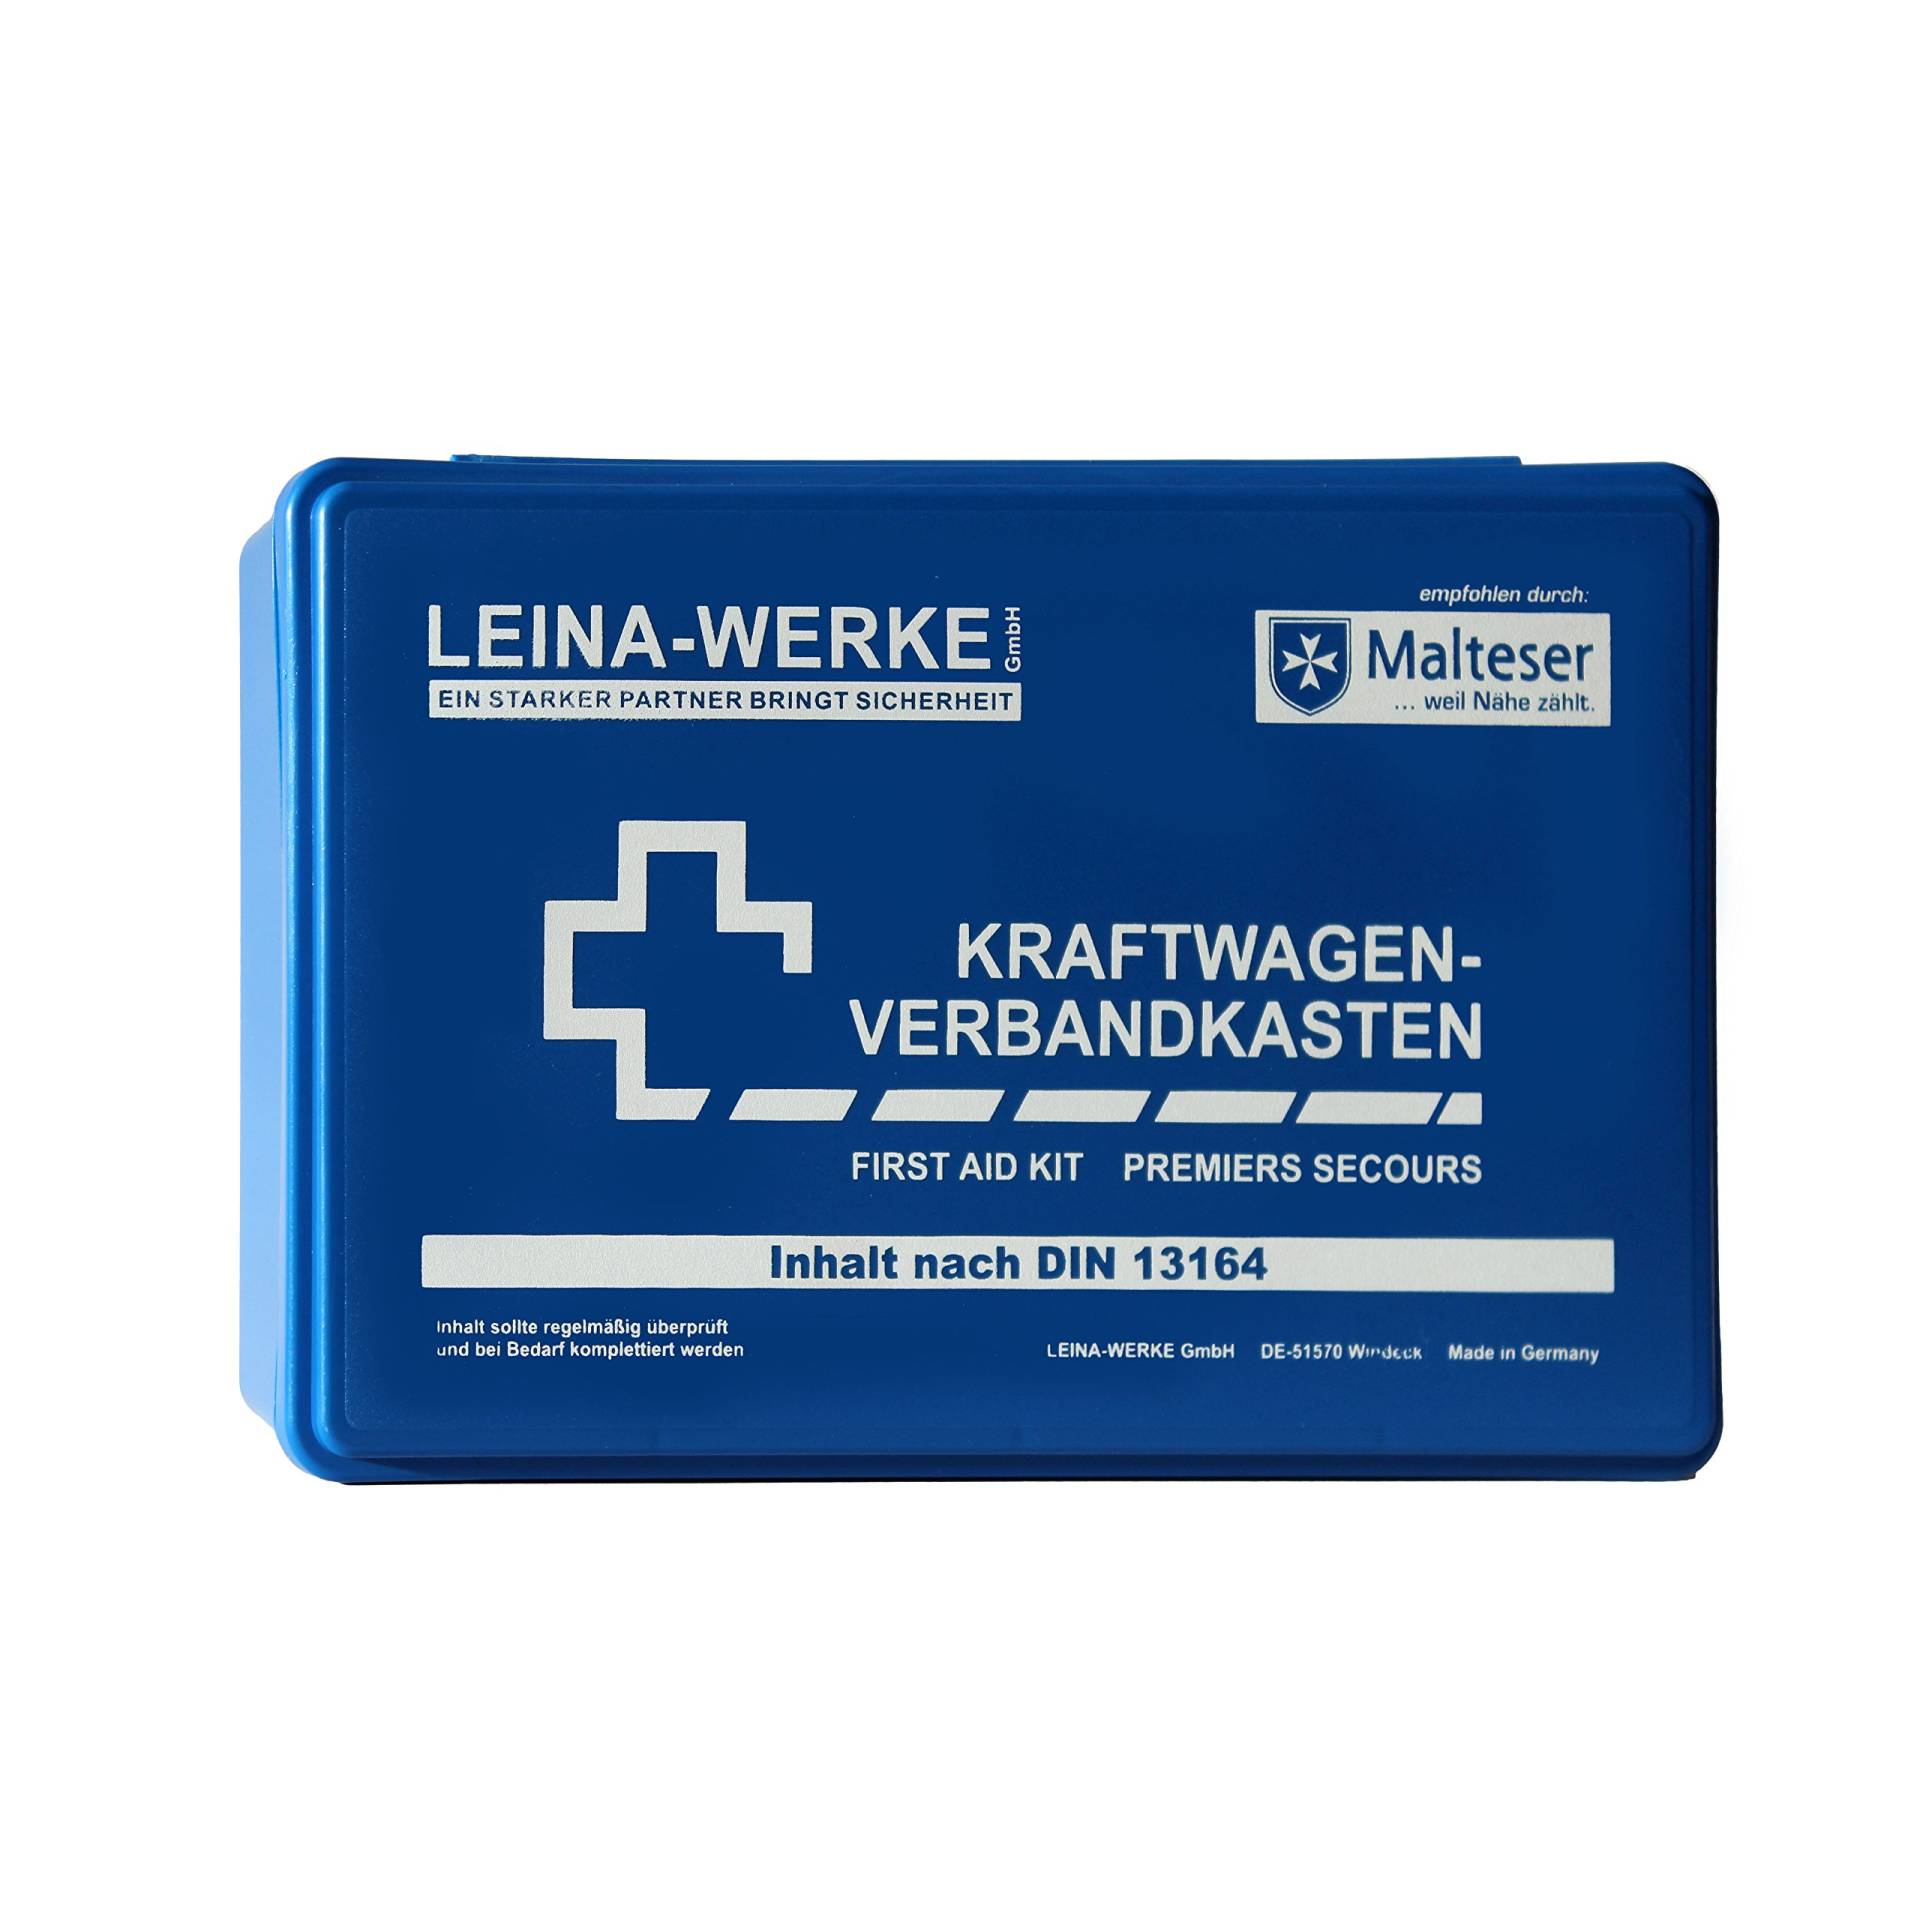 Leina-Werke 10001 KFZ-Verbandkasten Standard, Blau/Weiß von Leina-Werke